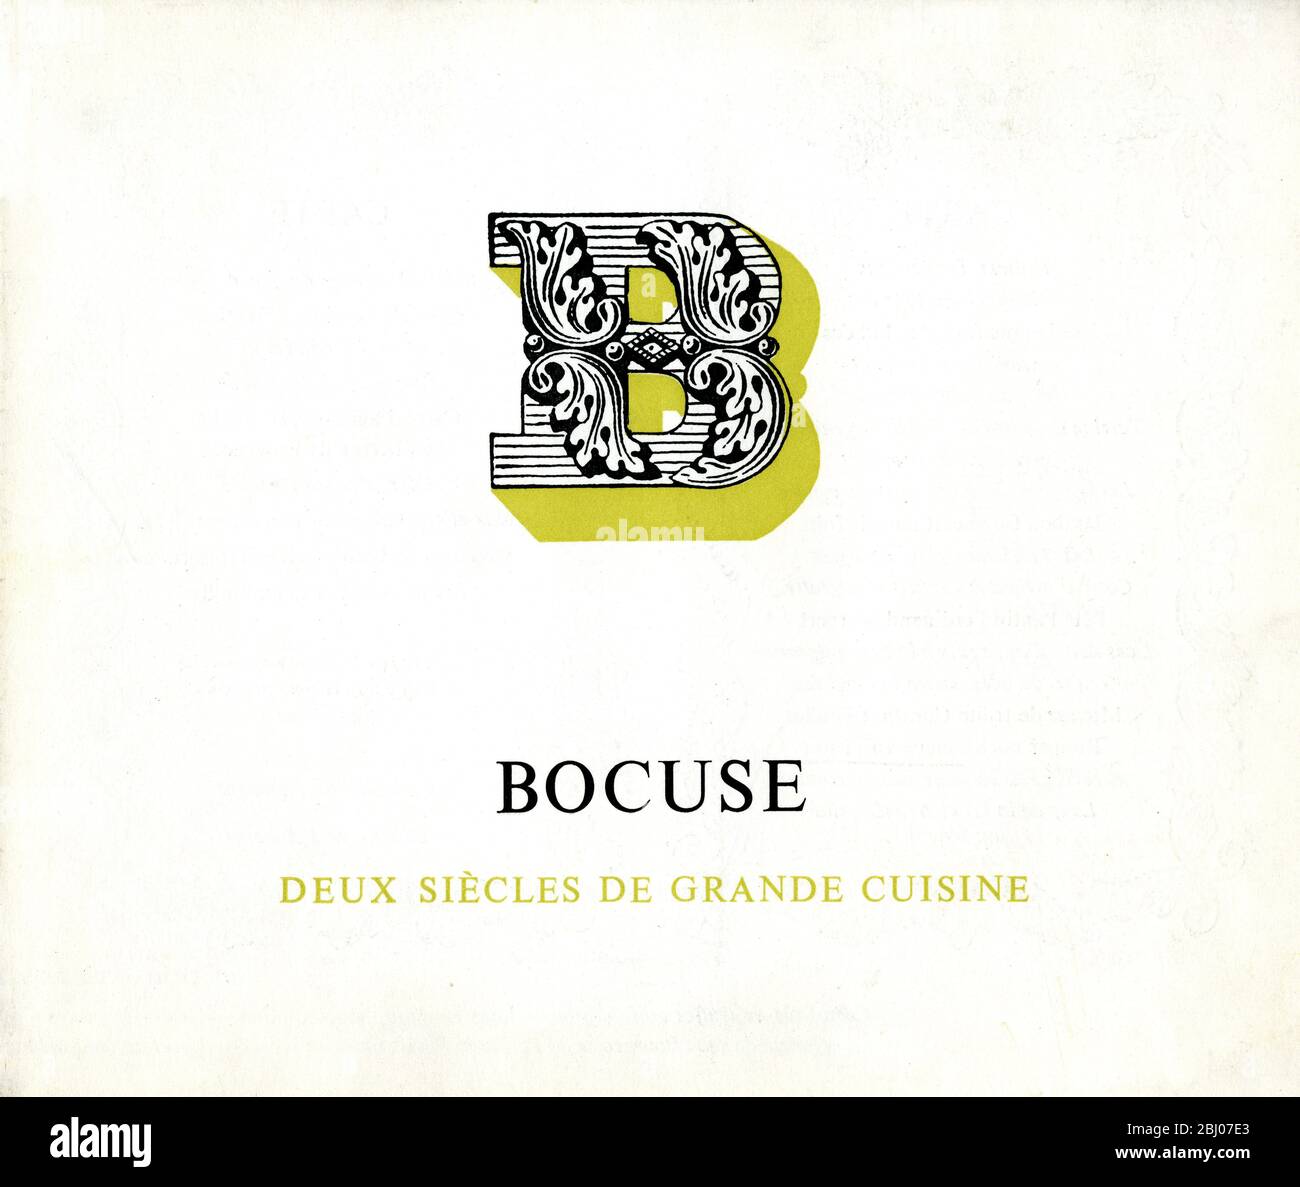 Collection de menus - Paul Bocuse, l'Auberge du Pont de Collonges - 40 rue de la Plage, 69660 Collonges-au-Mont-d'Or, France Banque D'Images